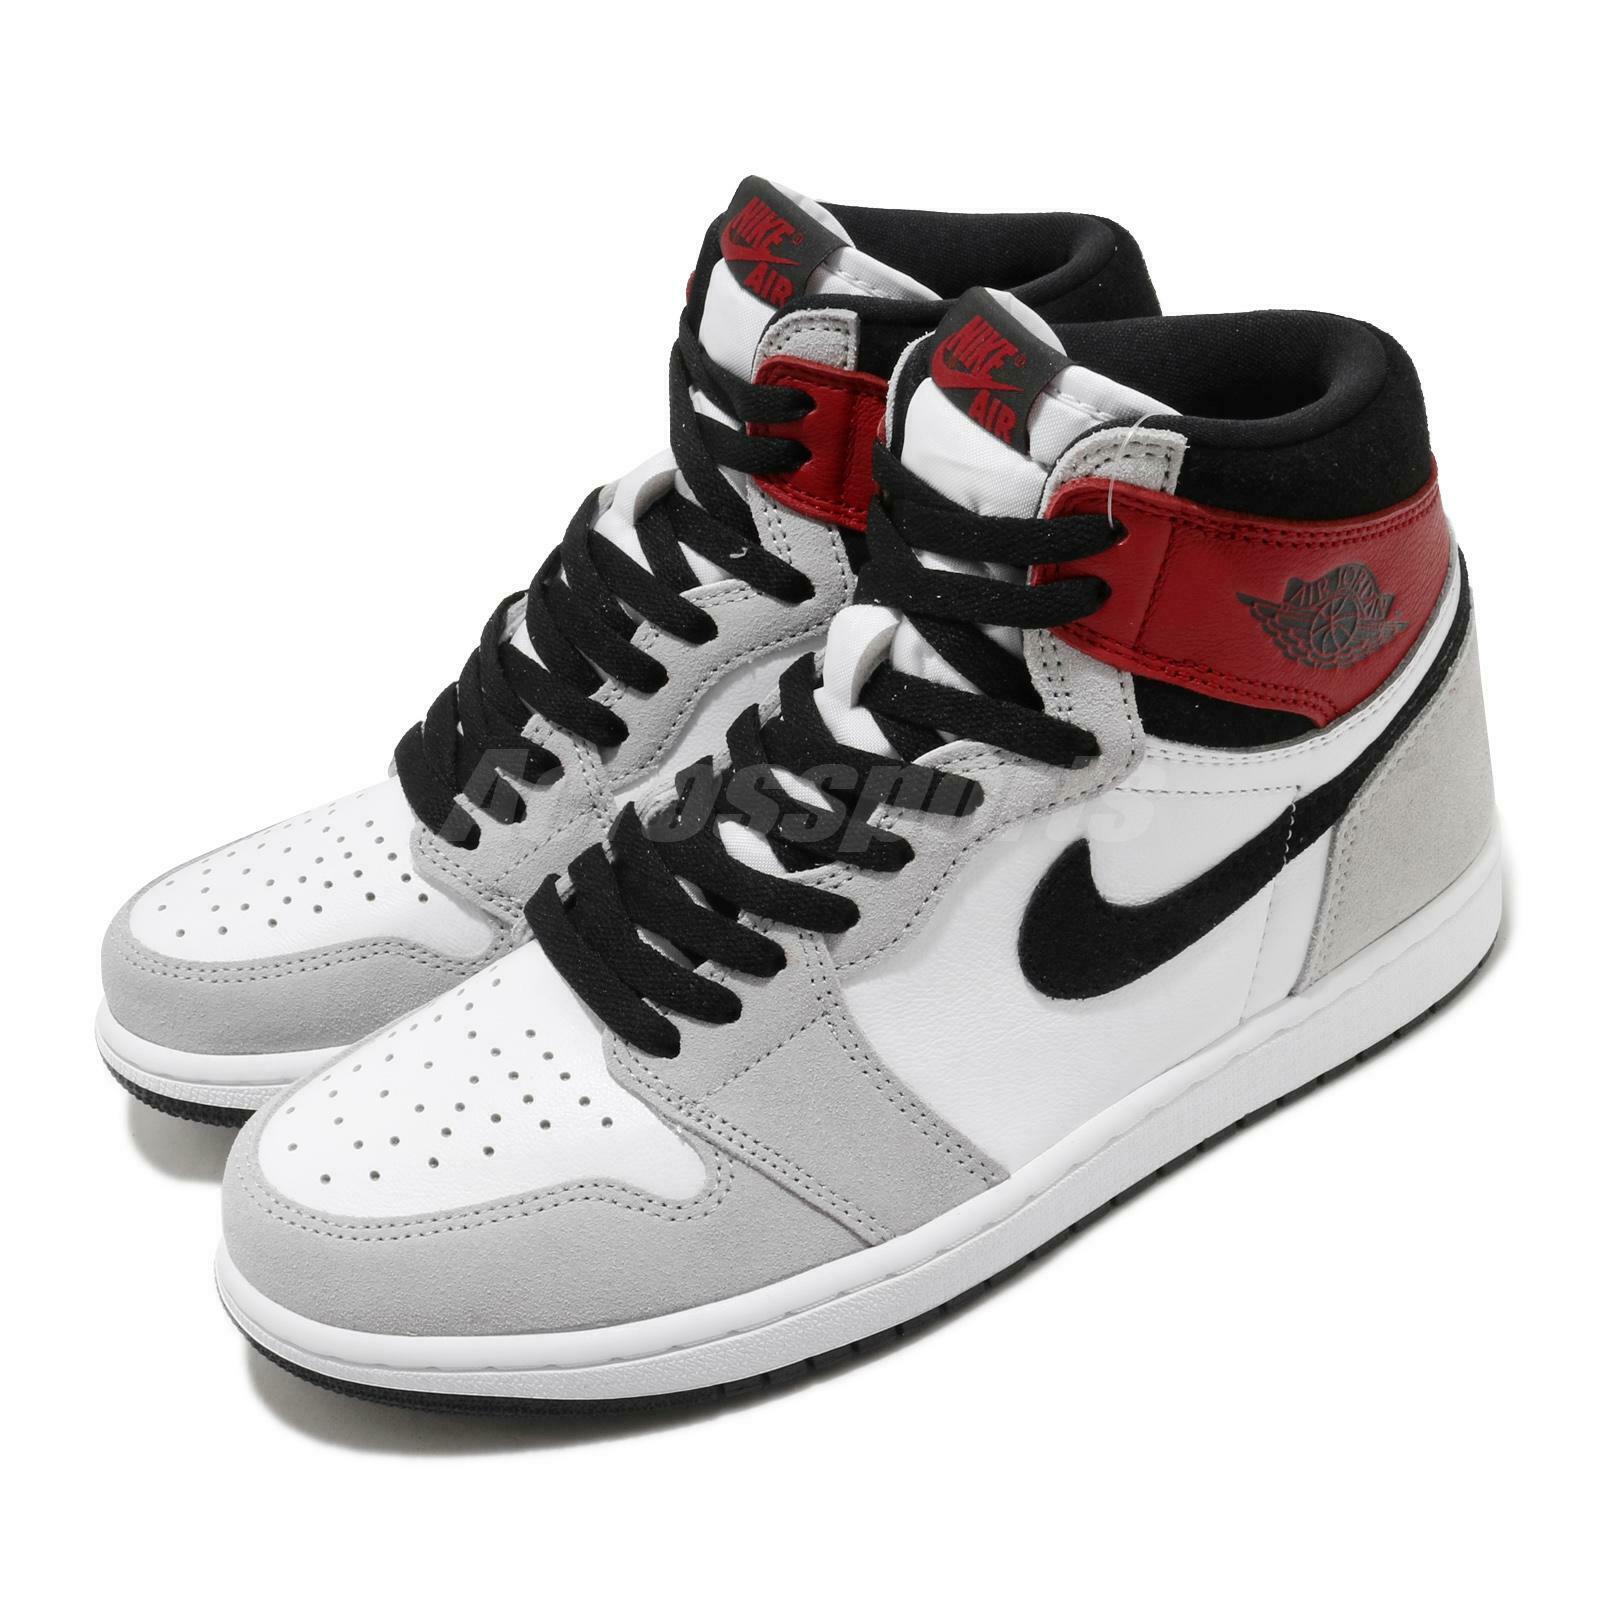 Nike Air Jordan 1 Retro High OG AJ1 